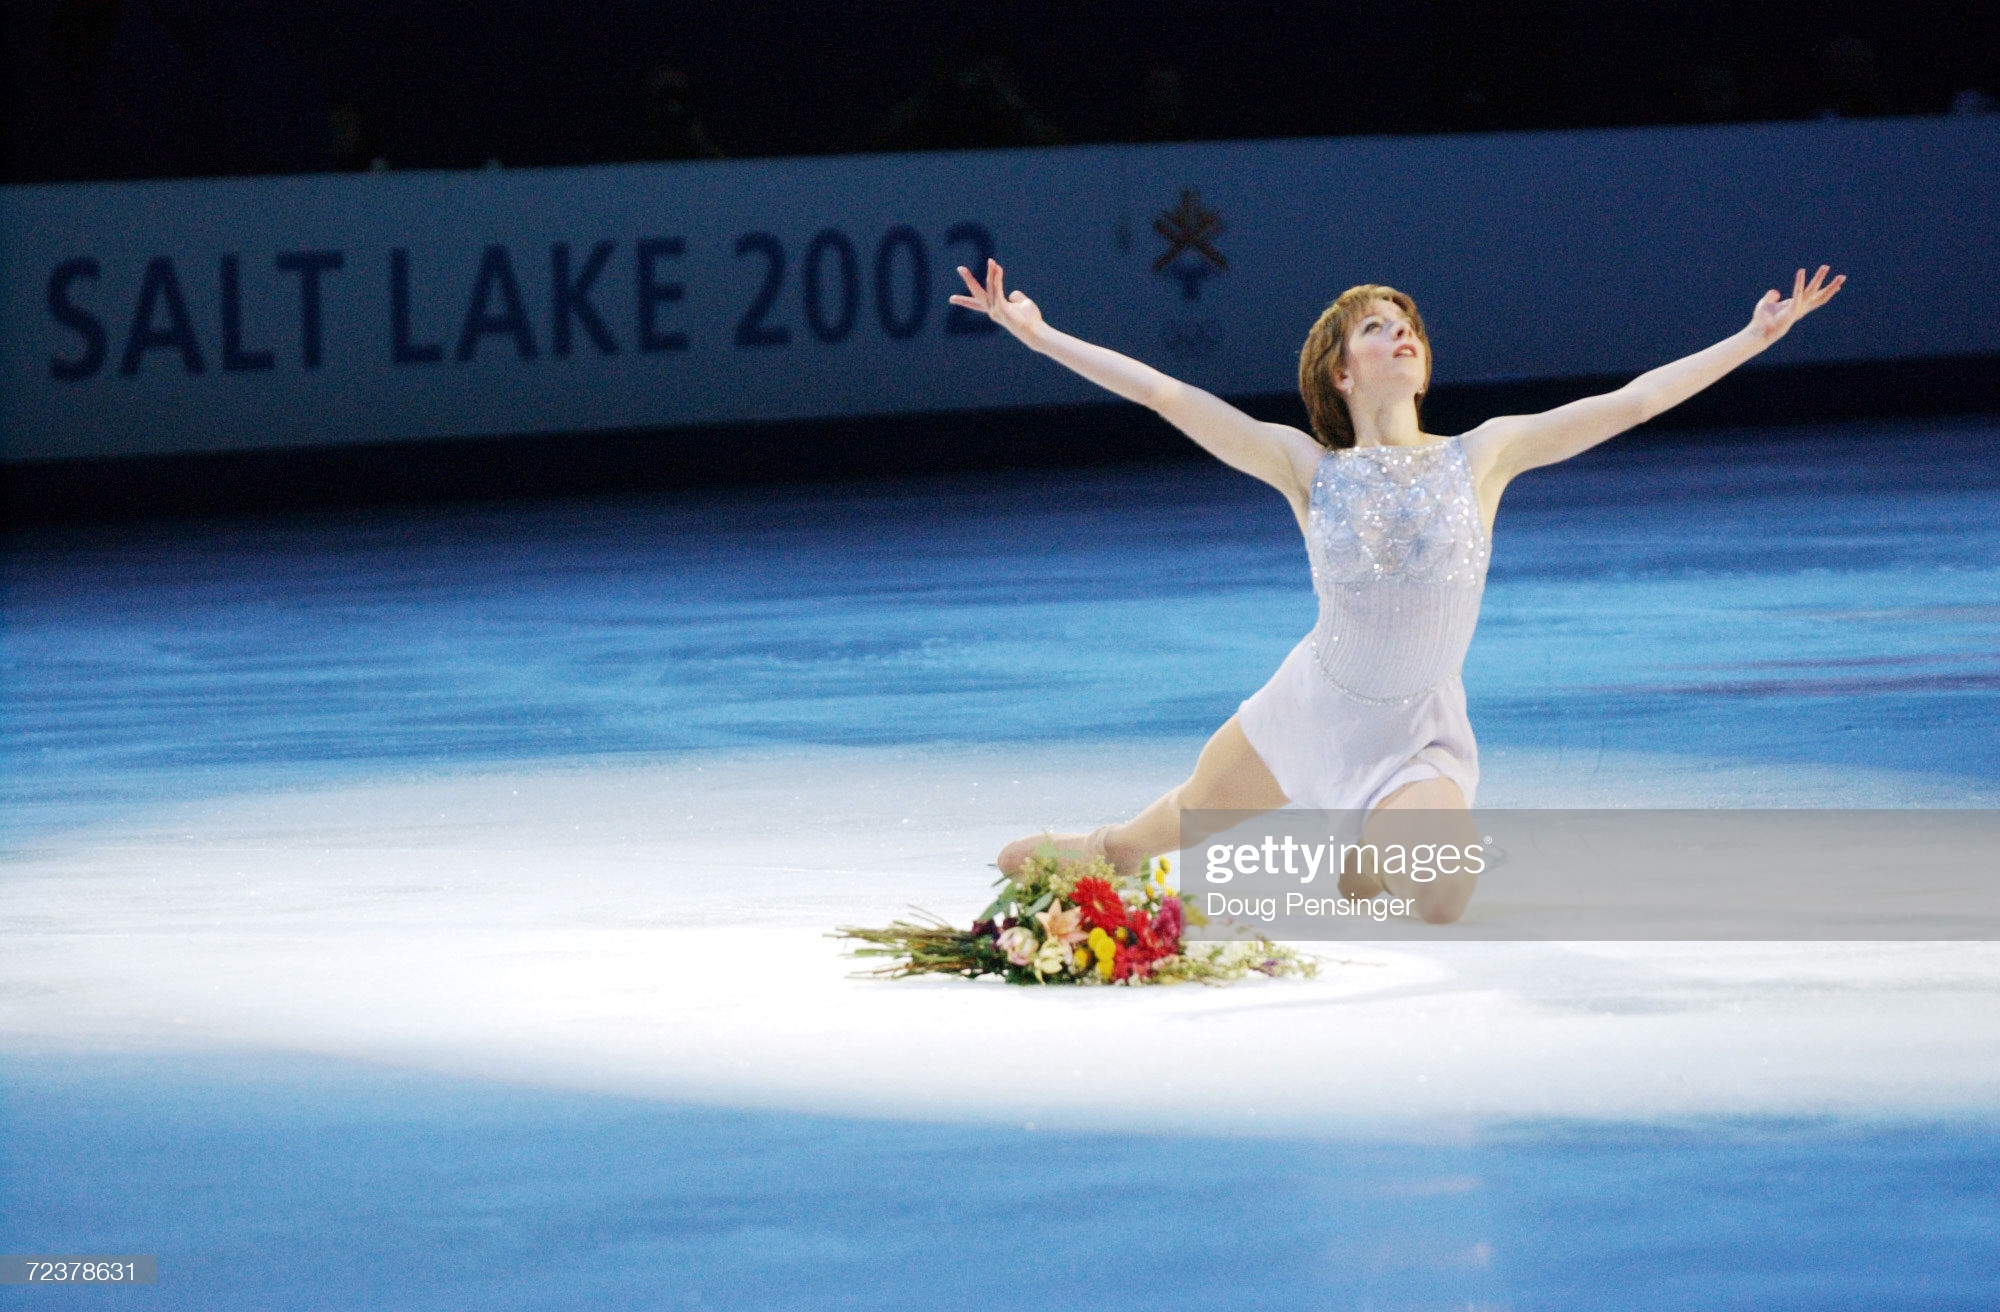 Olympics Figure skating 2002